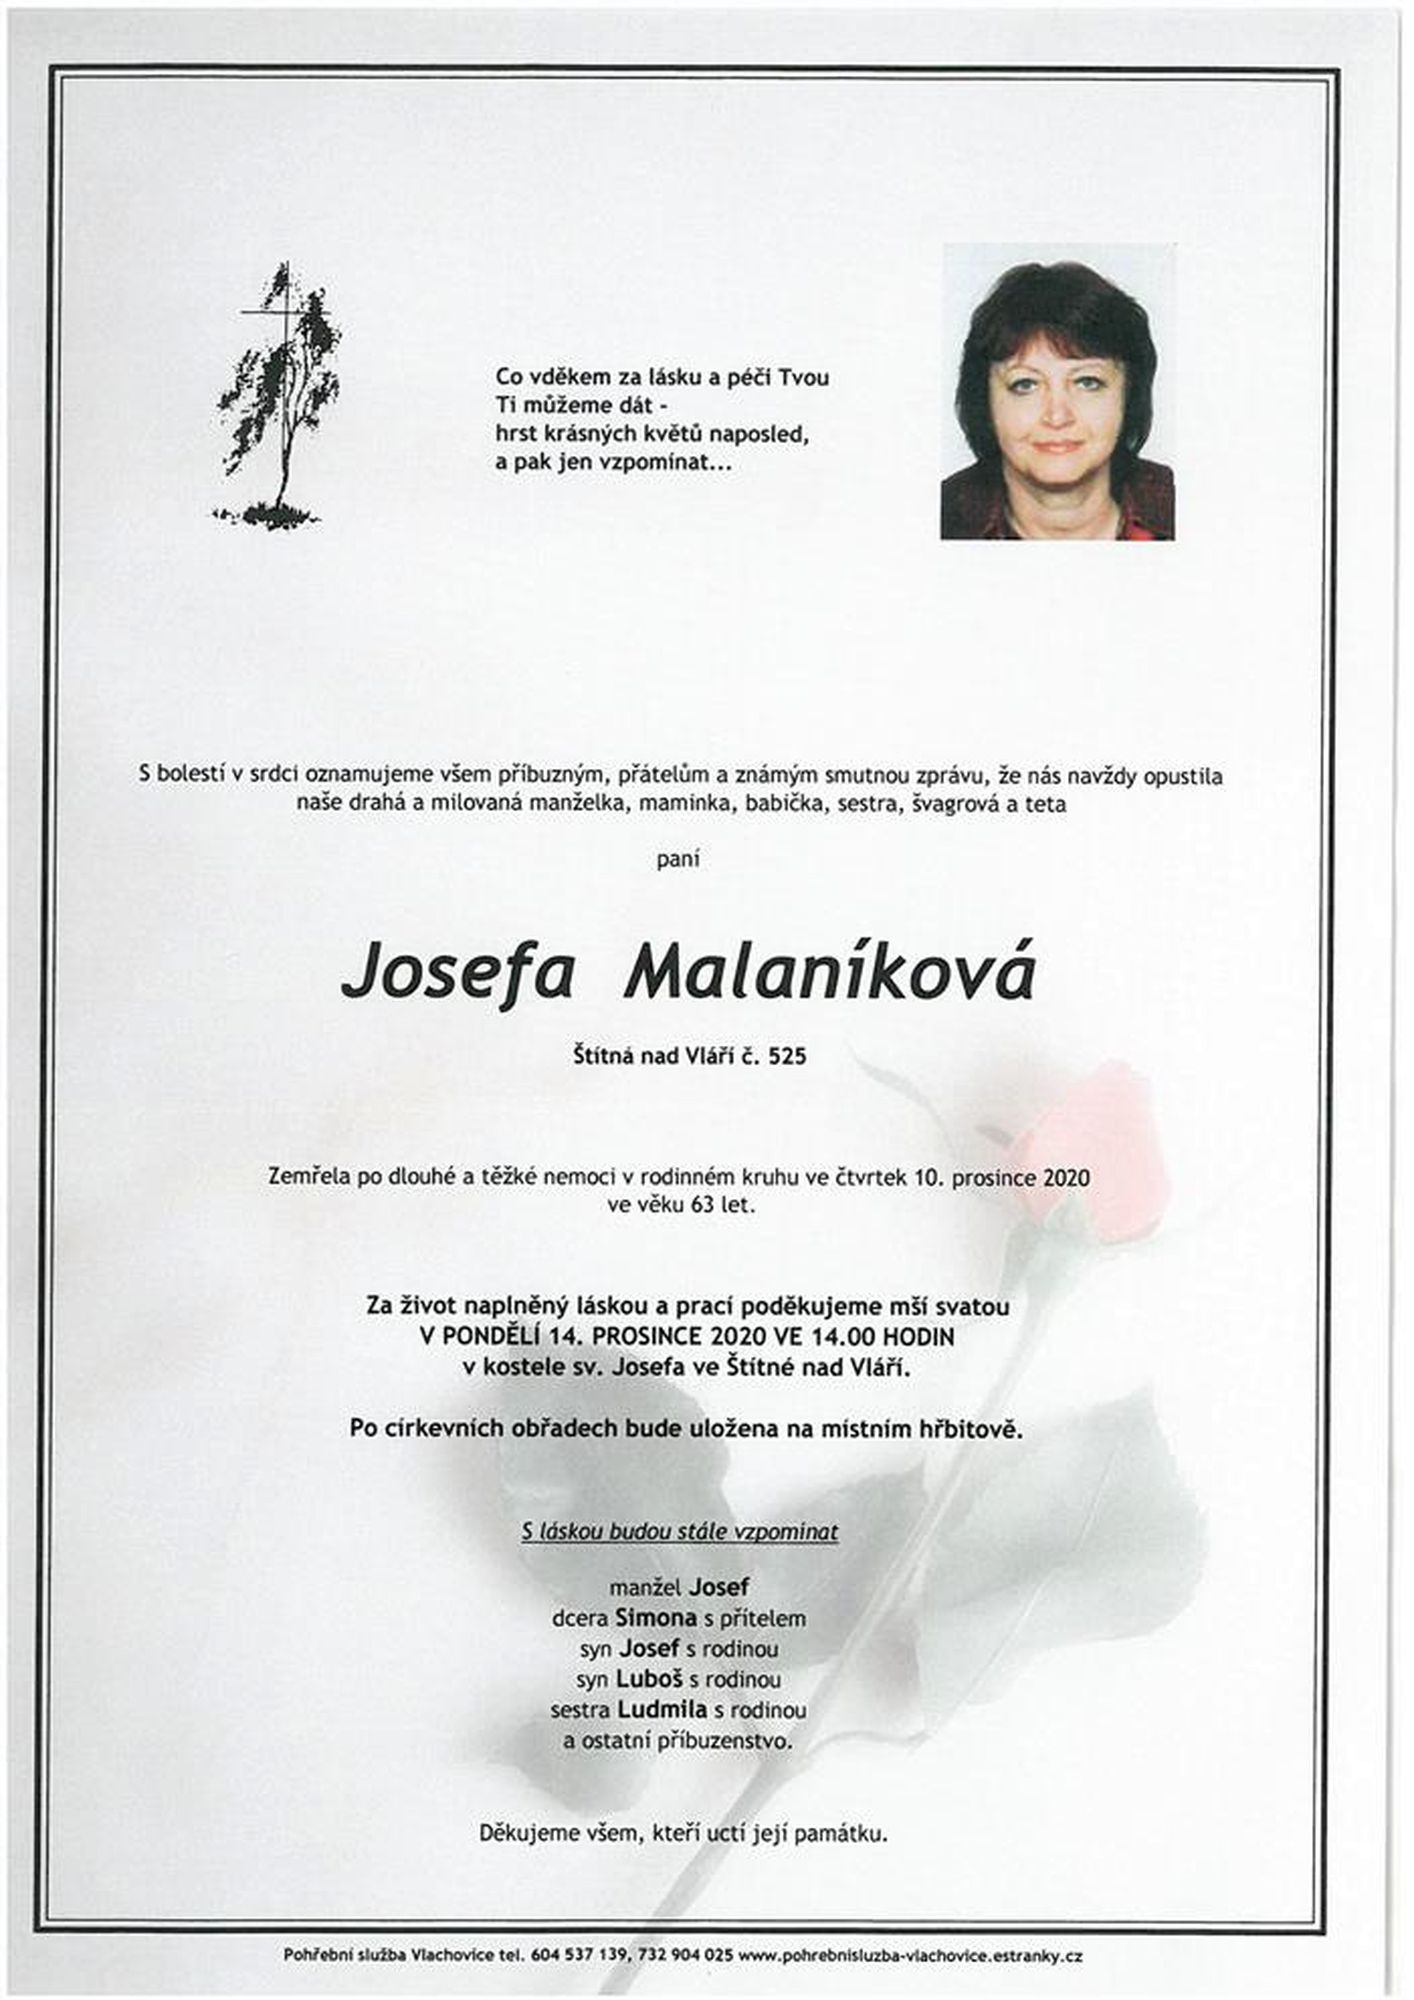 Josefa Malaníková